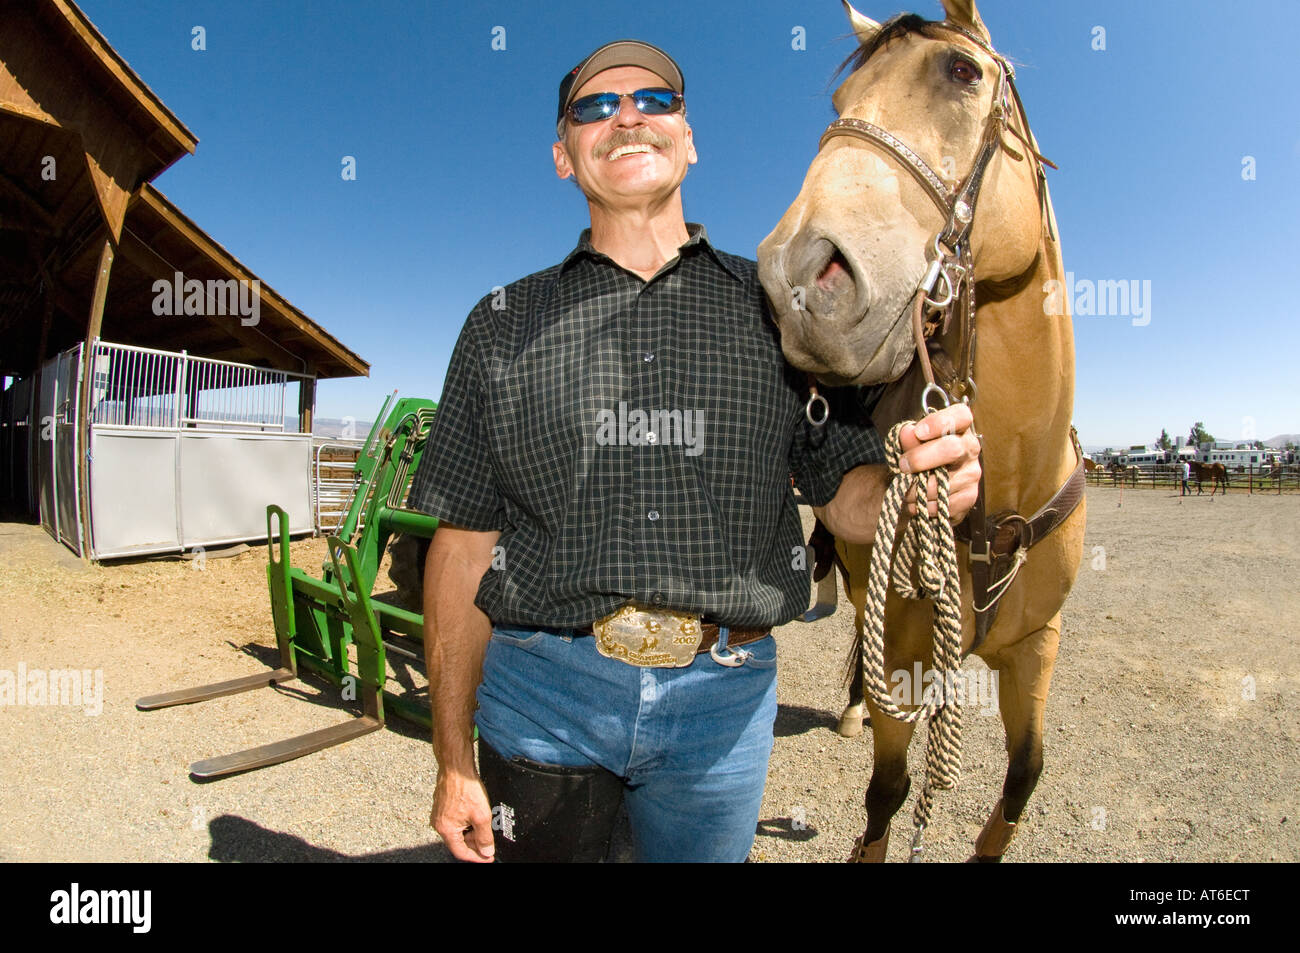 Der moderne Cowboy. Leben. Rodeo-Kandidat mittleren Alters und sein Pferd posieren für ein Foto beim Rodeo-Wettbewerb in der Nähe von Ellensburg, WA, USA. Stockfoto